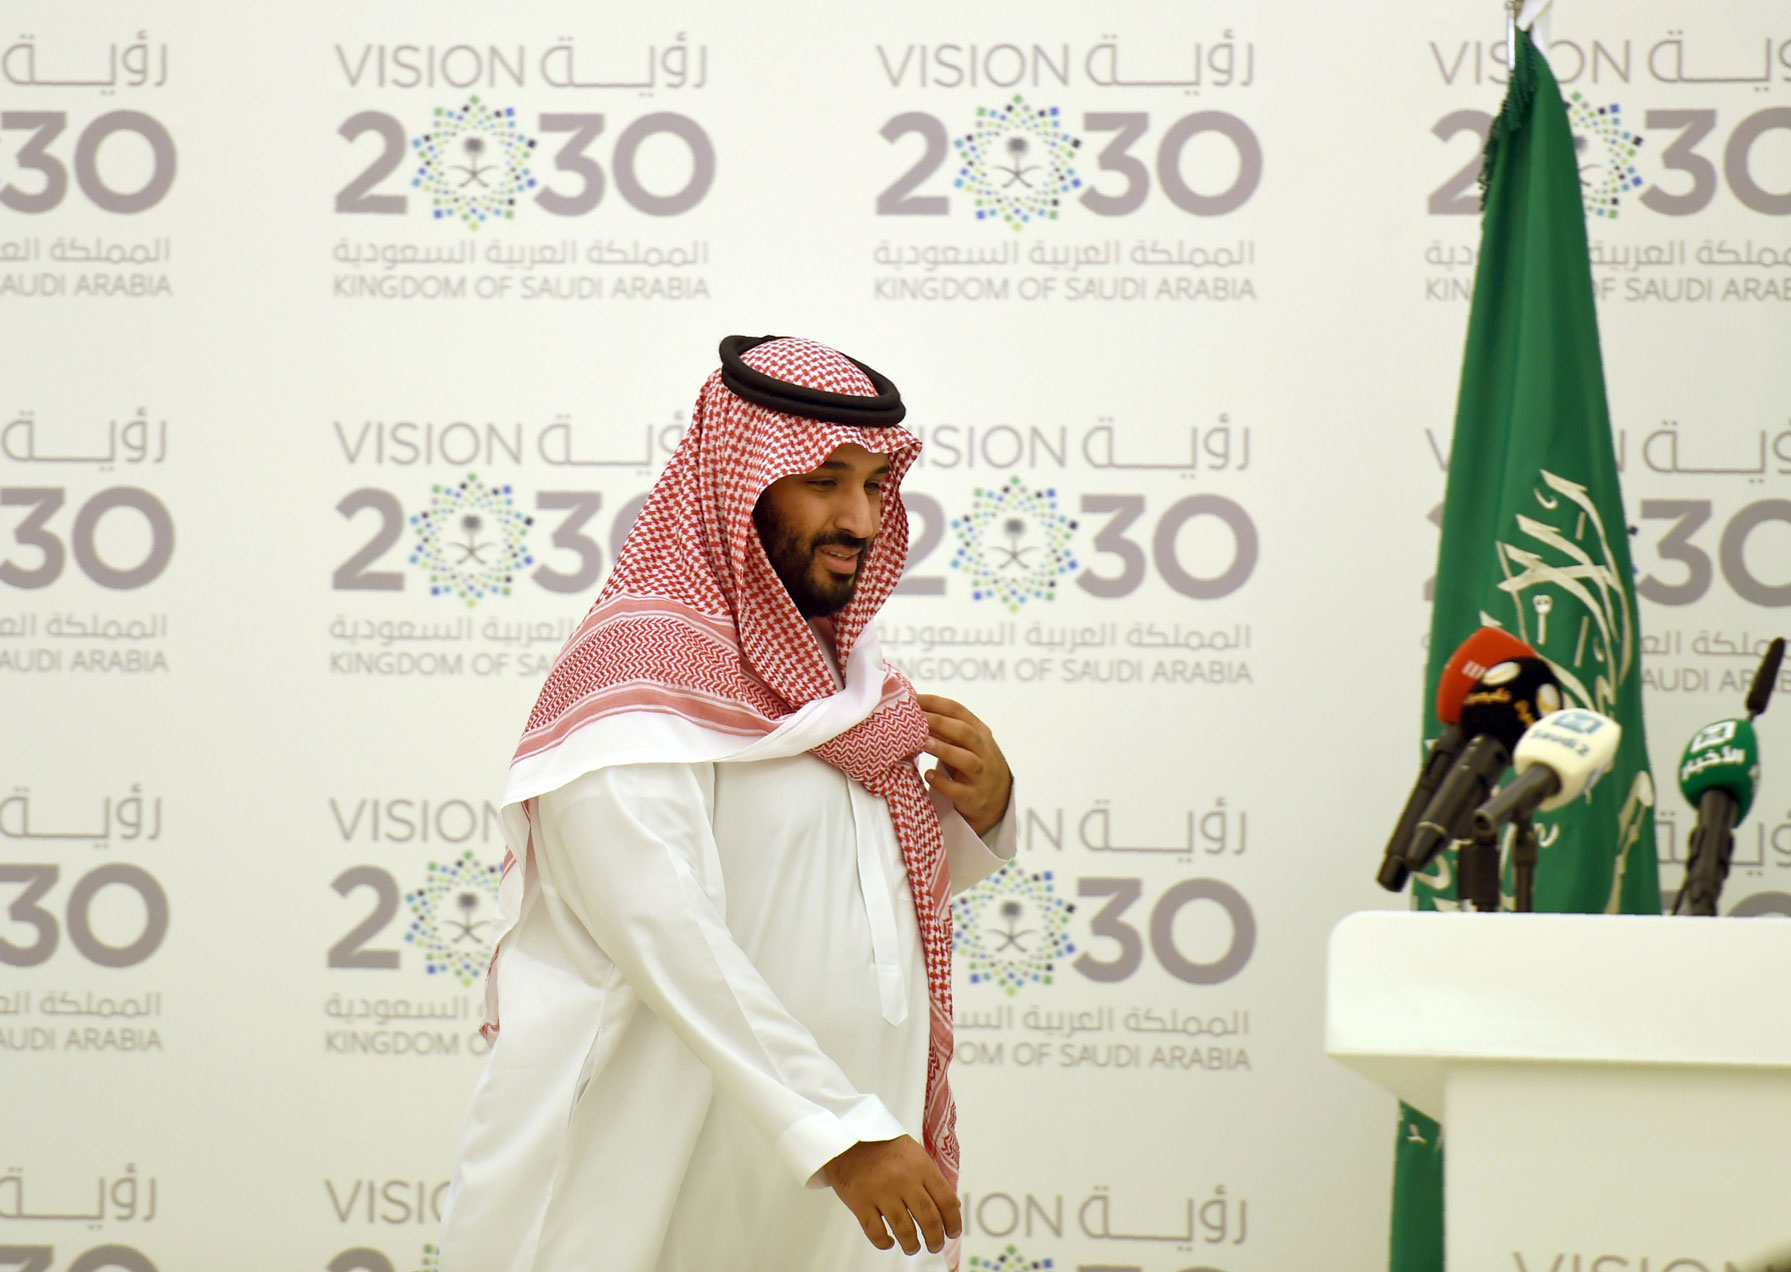 'رؤية المملكة 2030' خطة اقتصادية طموحة يقودها الأمير محمد وتهدف لتنويع مصادر الدخل من خارج القطاع النفطي